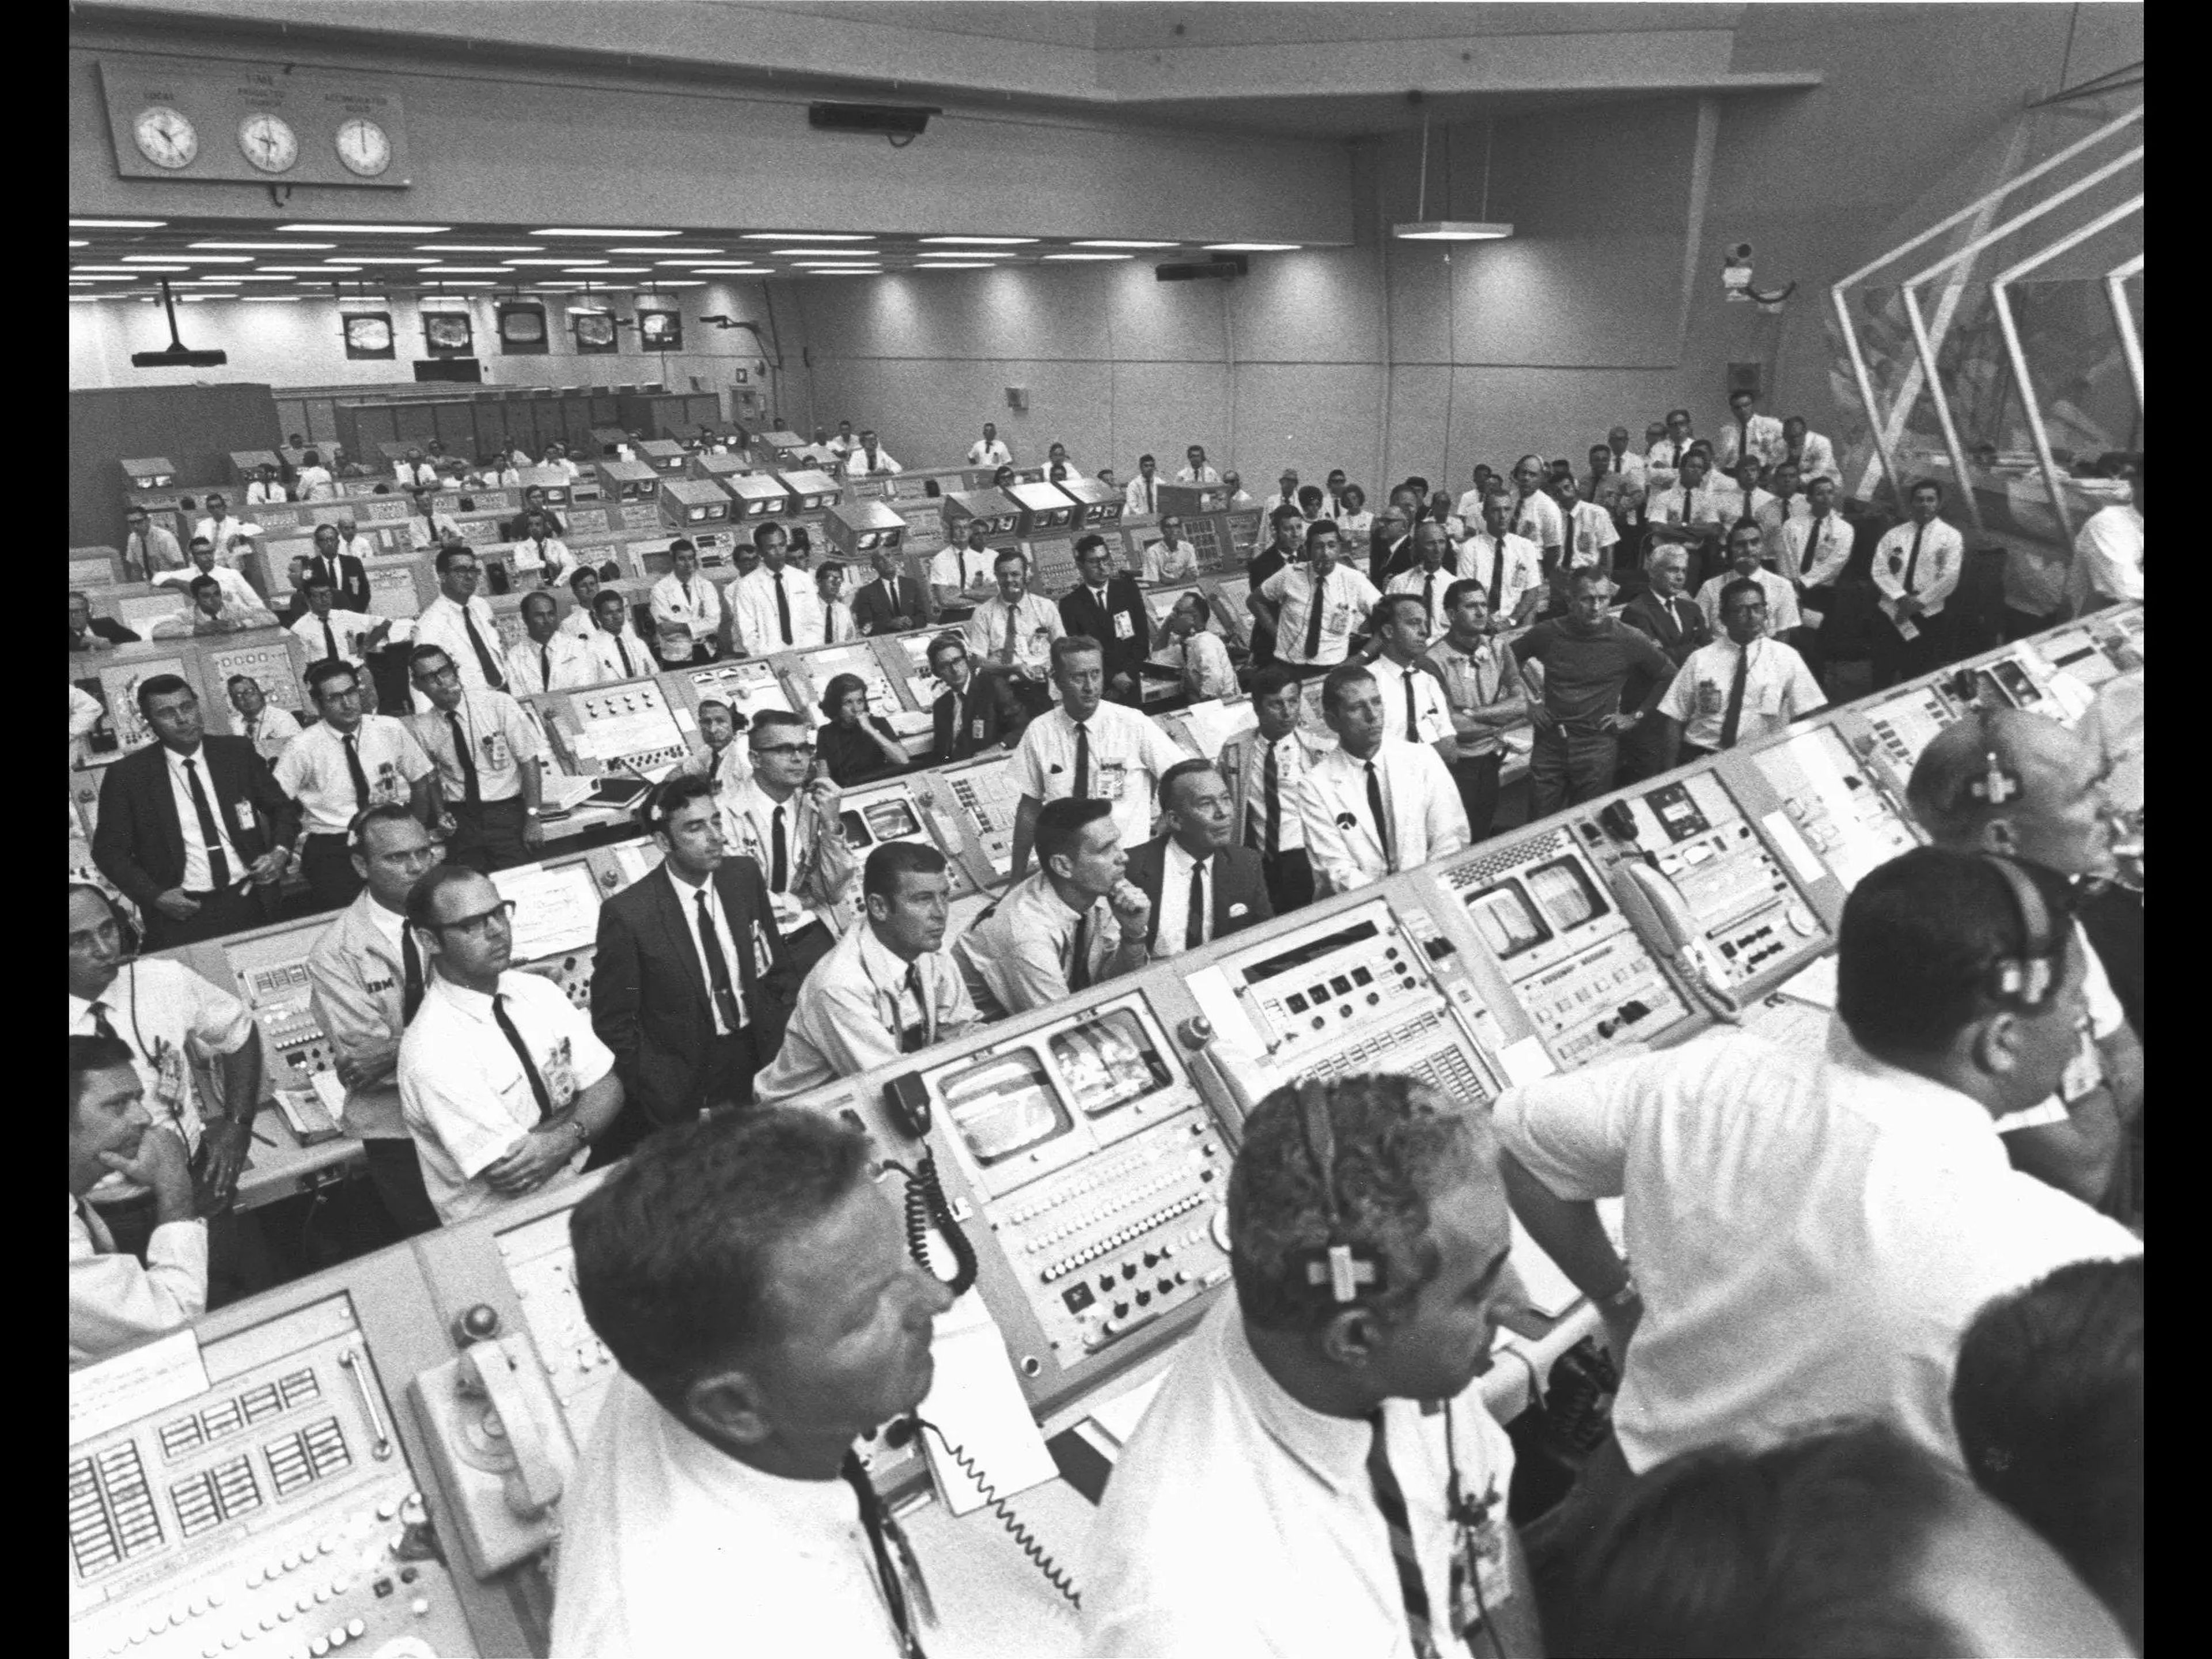 El personal de la misión Apolo 11 de la NASA observa el despegue el 16 de julio de 1969.